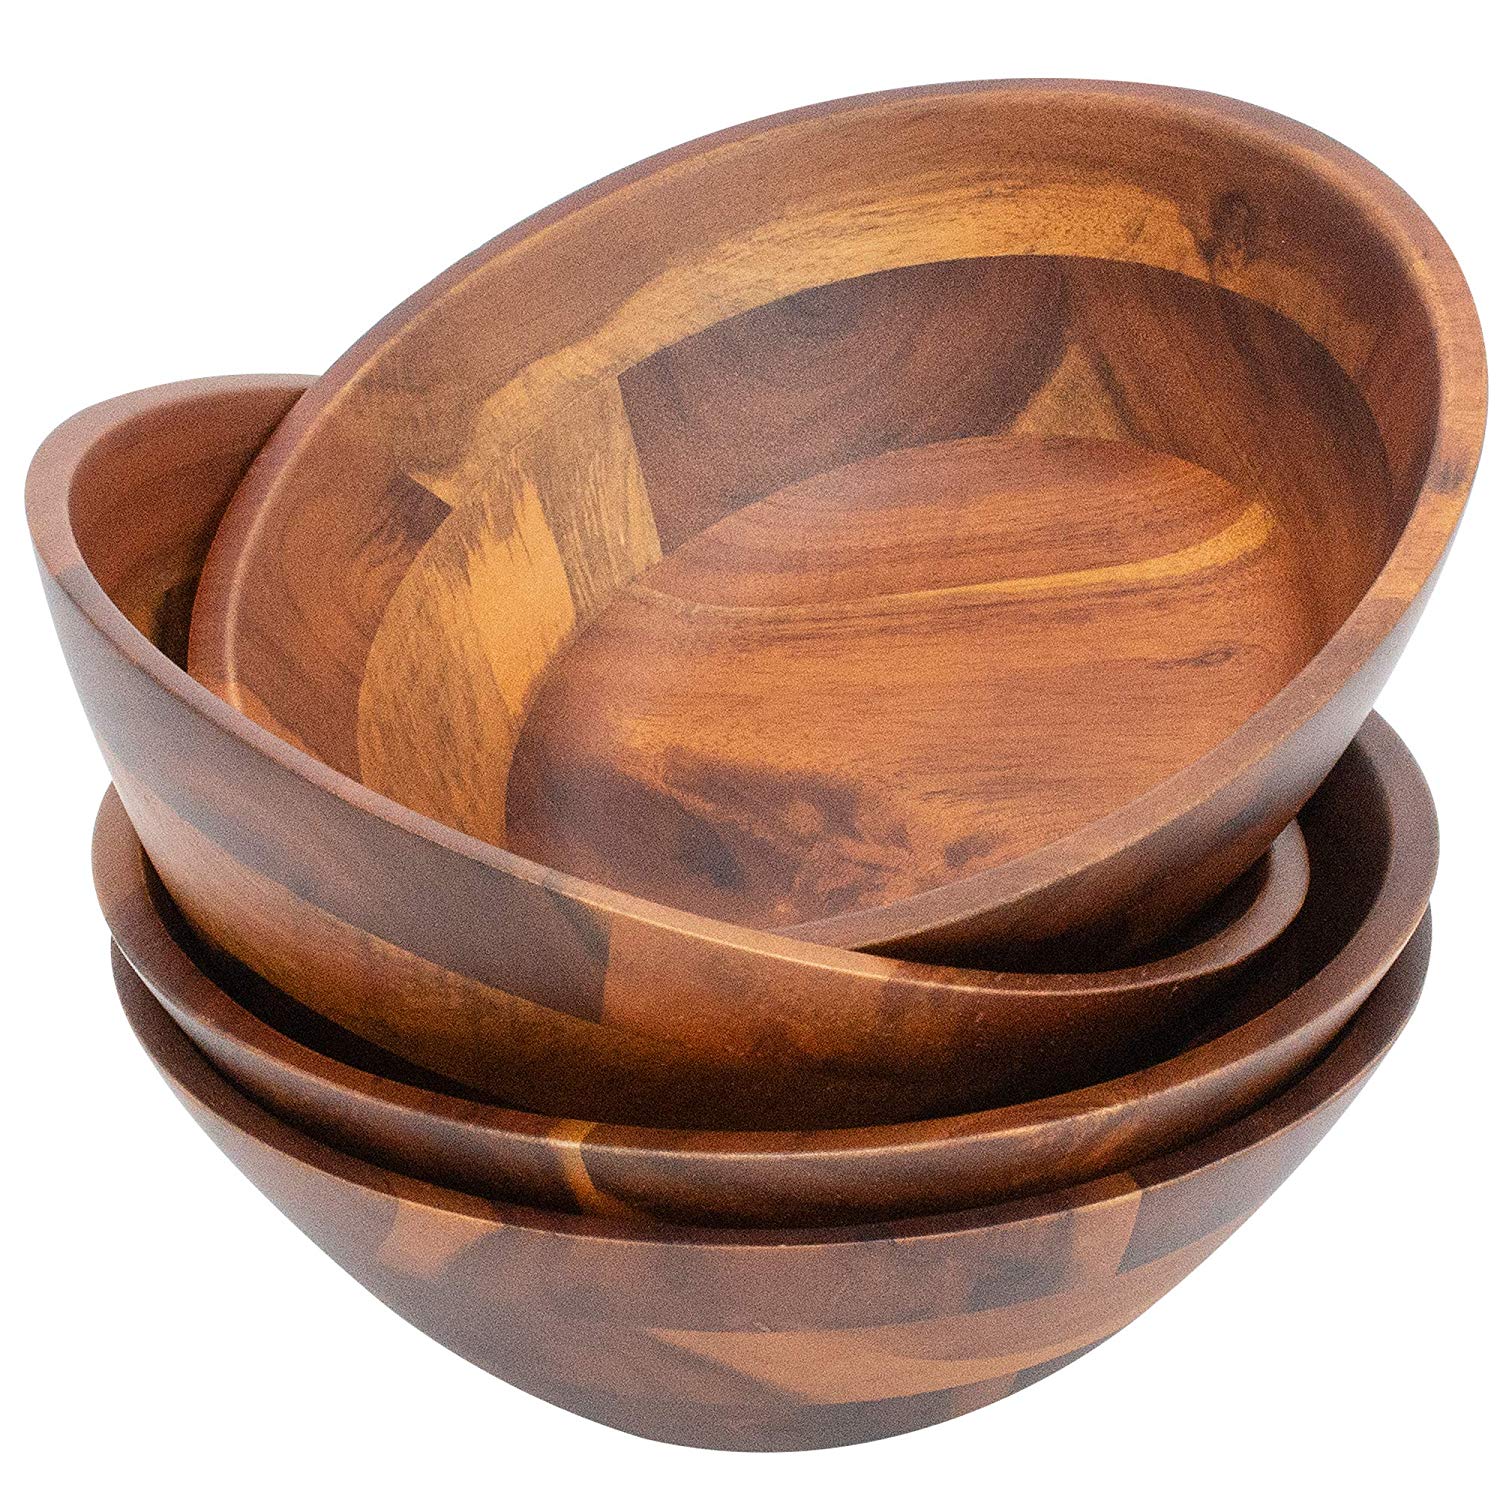 acacia wood salad bowl